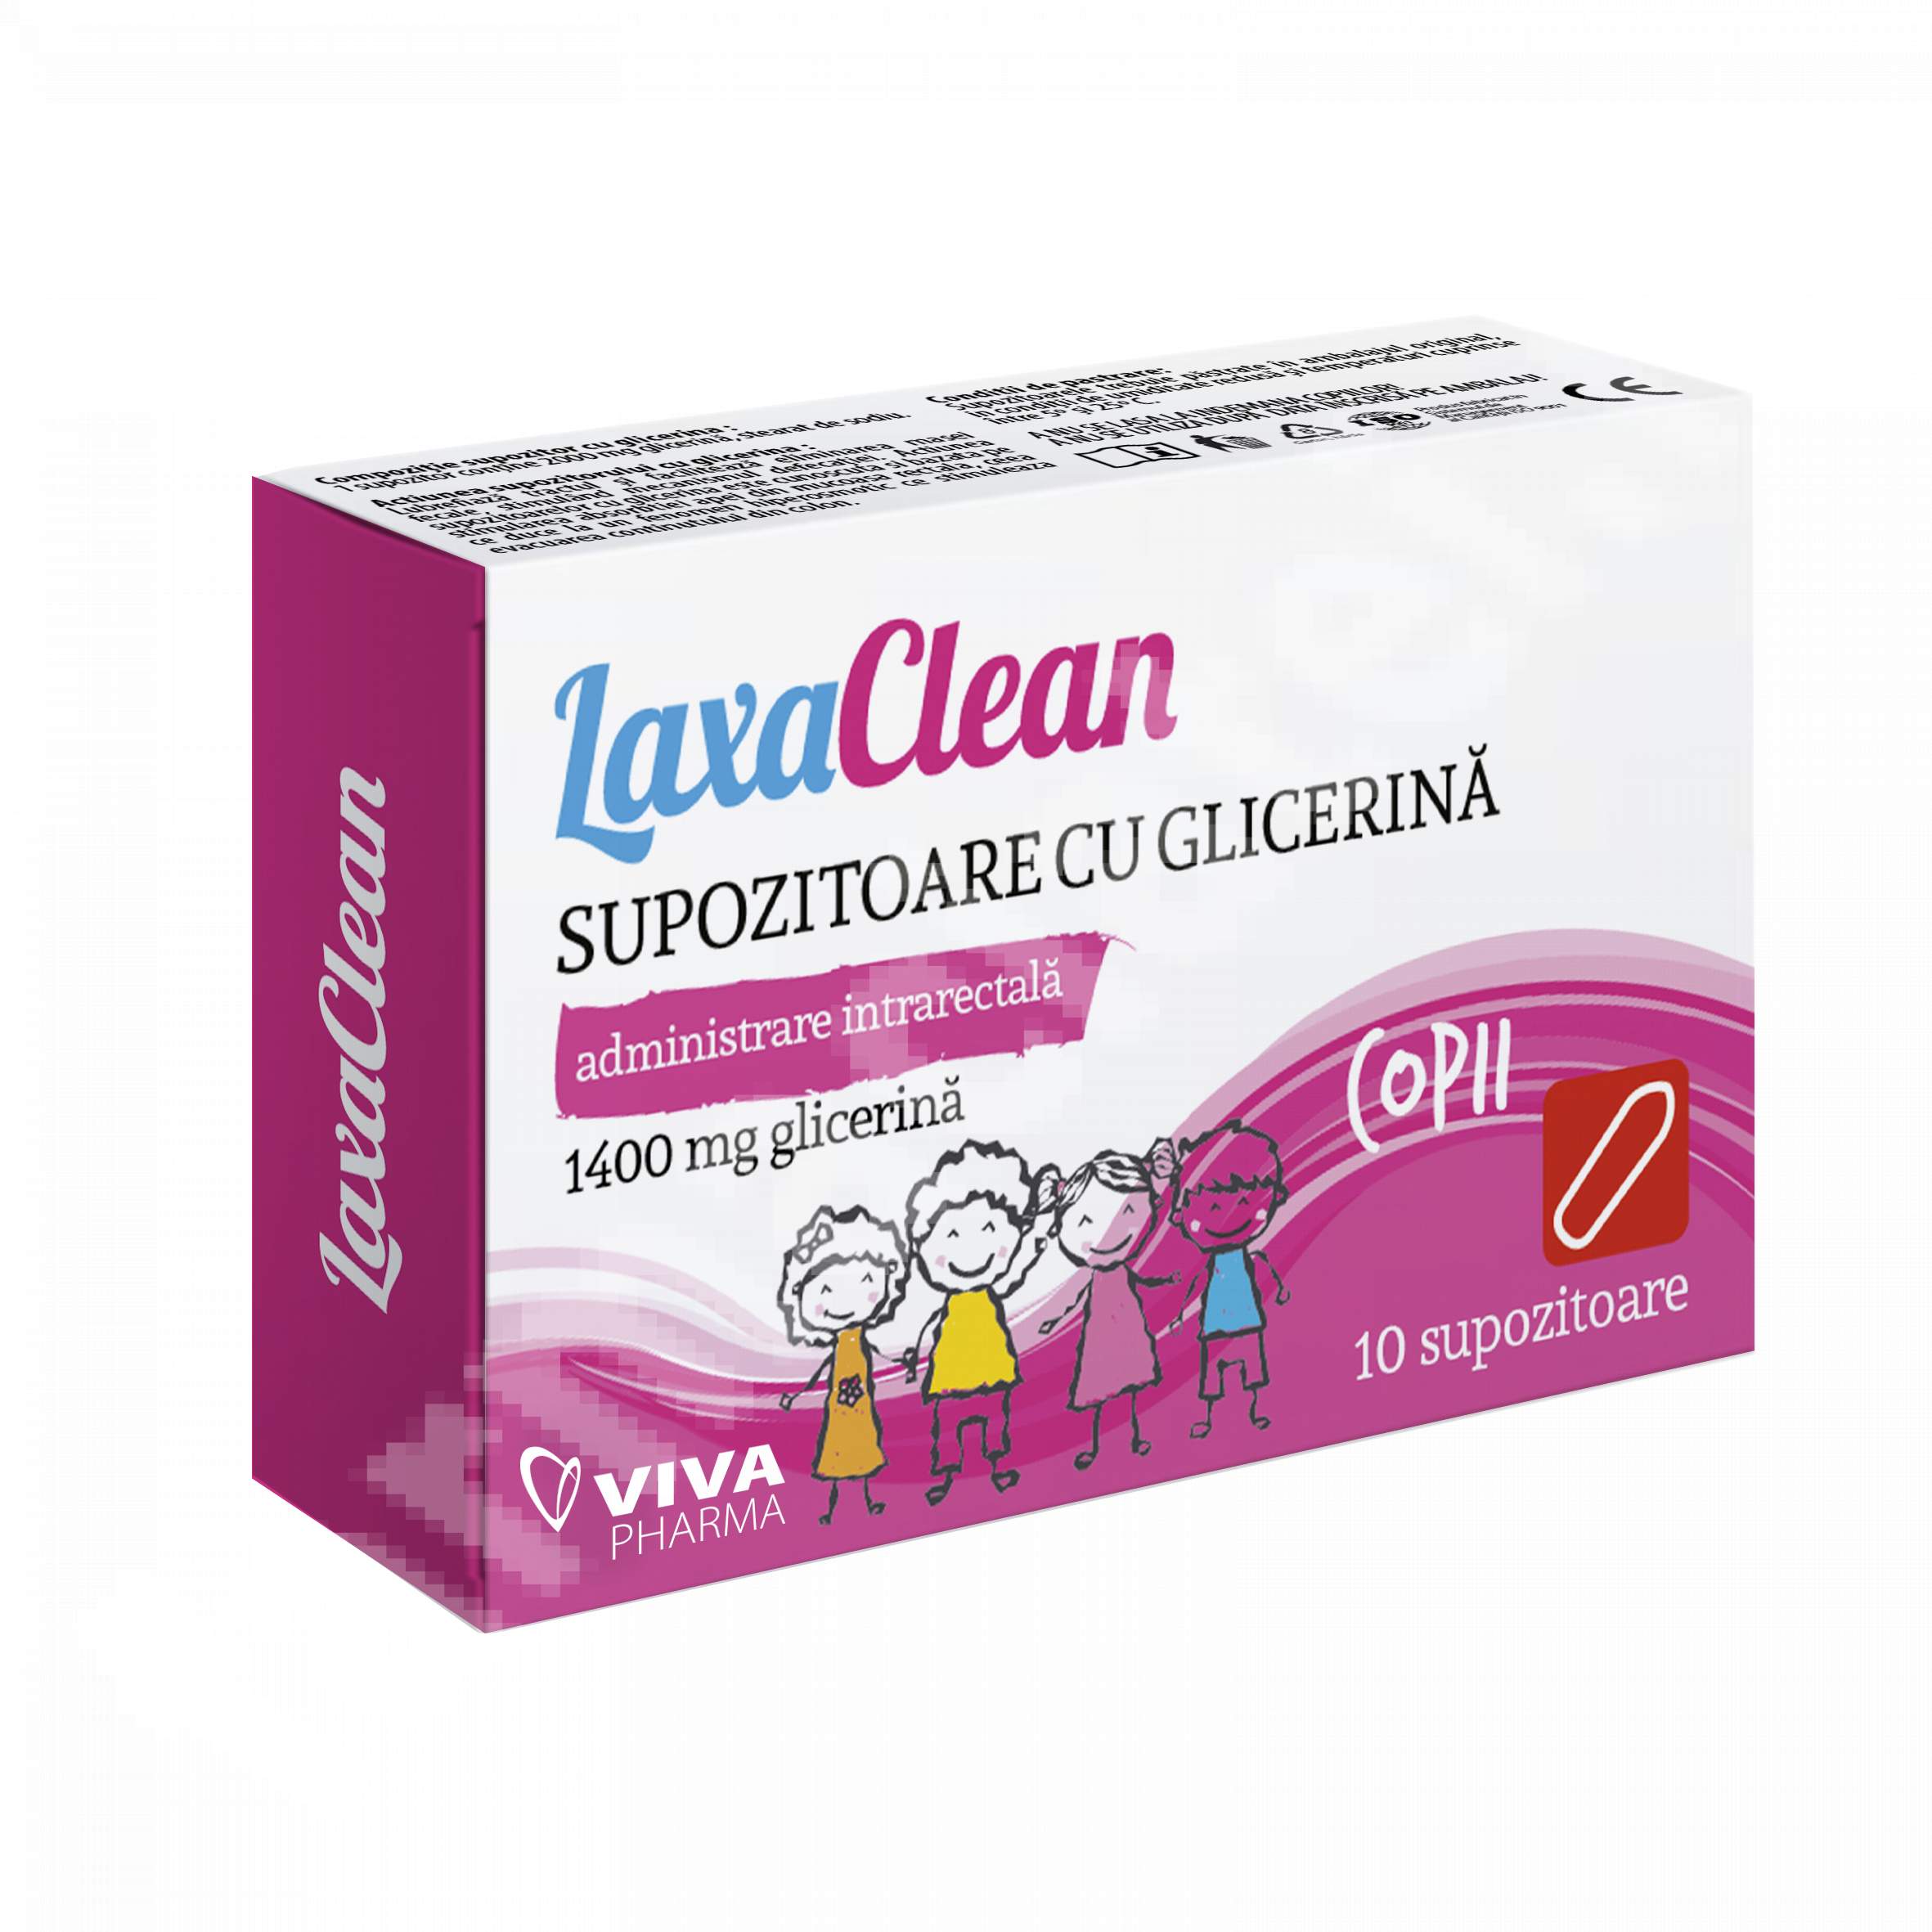 Supozitoare cu glicerina pentru copii LaxaClean, 10 bucati - Viva Pharma